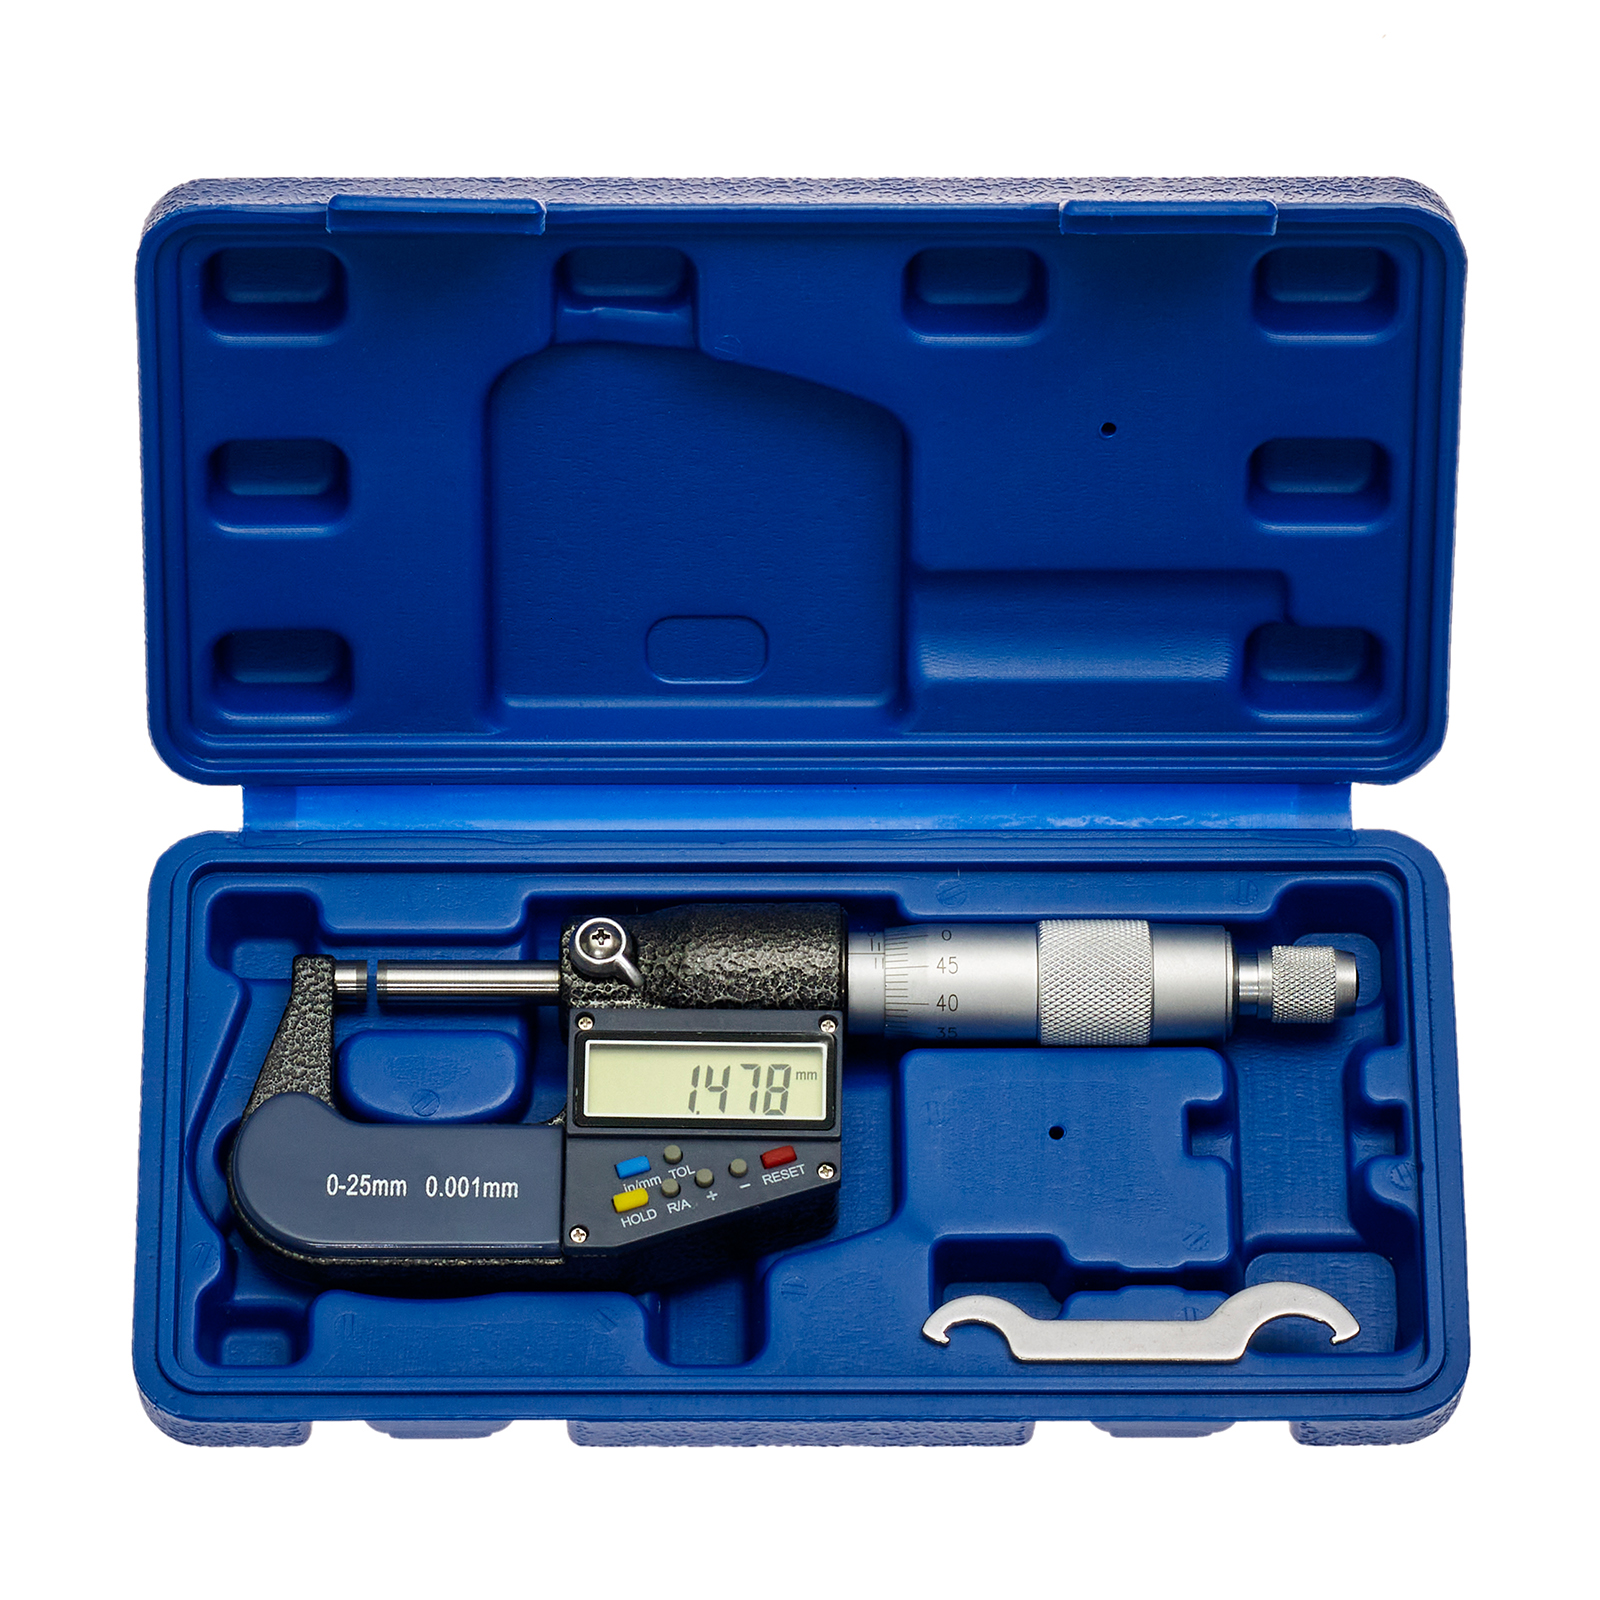 Digital Mikrometer Bügelmessschraube Messschraube Messwerkzeug Micrometer 0-25mm 